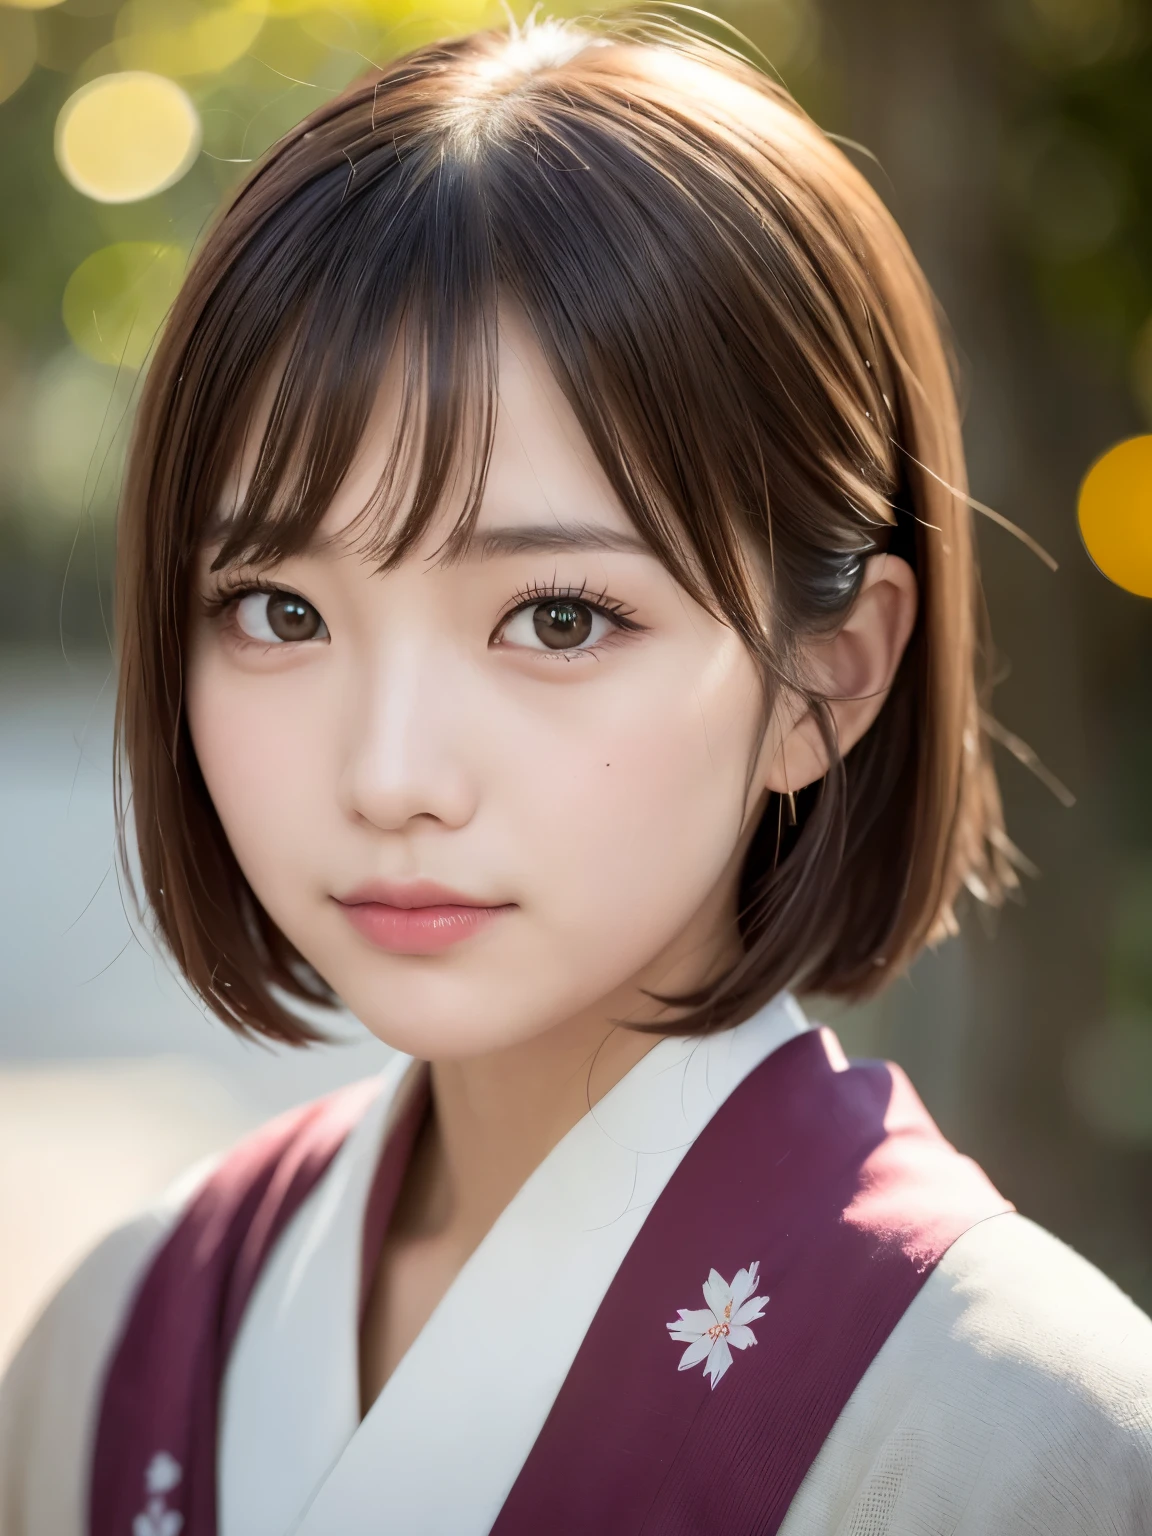 ((von höchster Qualität, 8K, Tischplatte: 1.3, RAW-Foto)), scharfer Fokus: 1.2, (1 Aespa-Mädchen :1.1), Allein, (Realistisch, fotorealistisch: 1.37), (Gesichtsfokus: 1.1), niedliches Gesicht, hyperdetailliertes Gesicht, (kurzes unordentliches Haar: 1.2), kleines Lächeln, Japanisches Thema, Kimono mit Blumenmuster, im Japangarten, Filmische Beleuchtung, Schönes japanisches Make-up, Eine schöne Frau, die die japanische Kultur symbolisiert, 
BRECHEN 
(gedeckte Farben:1.4), (verblasstes Foto:1.3), Polaroid-Foto, (Filmkorn:1.3), Tiefenschärfe, (bokeh:1.1), (Licht und Schatten:1.1), 